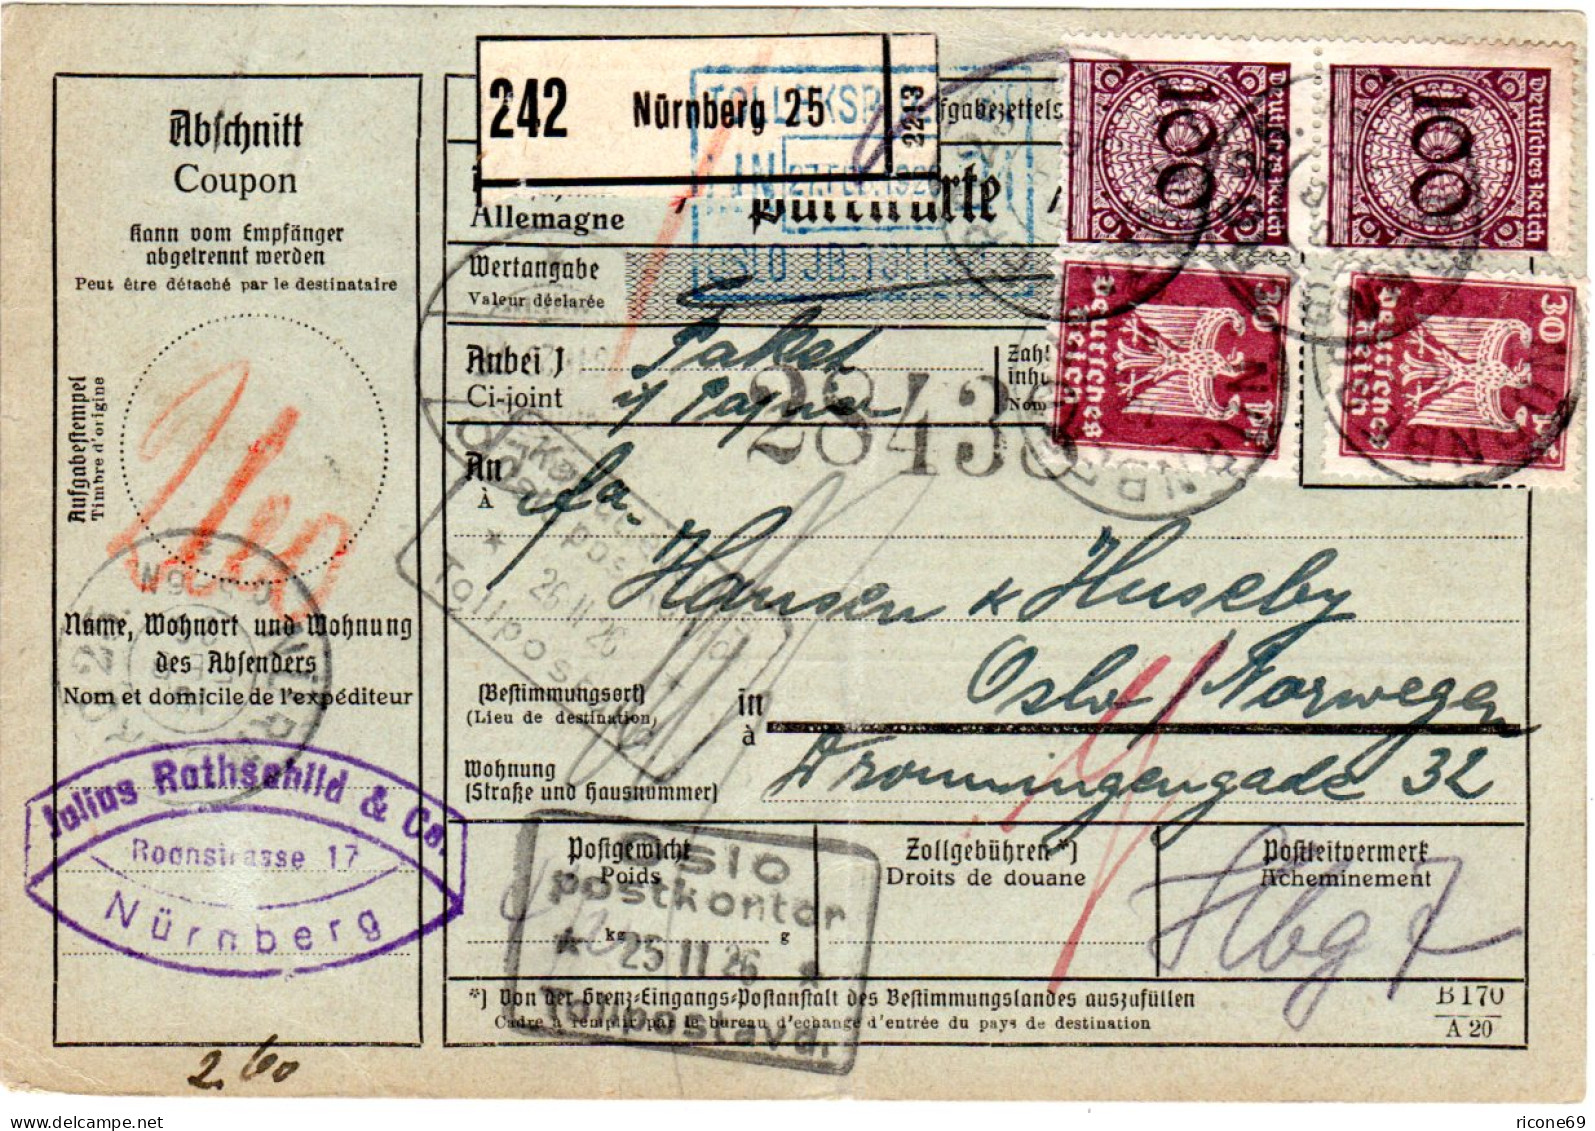 DR 1926, 2x30+2x100 Pf. Auf Paketkarte V. Nürnberg N. Norwegen - Brieven En Documenten